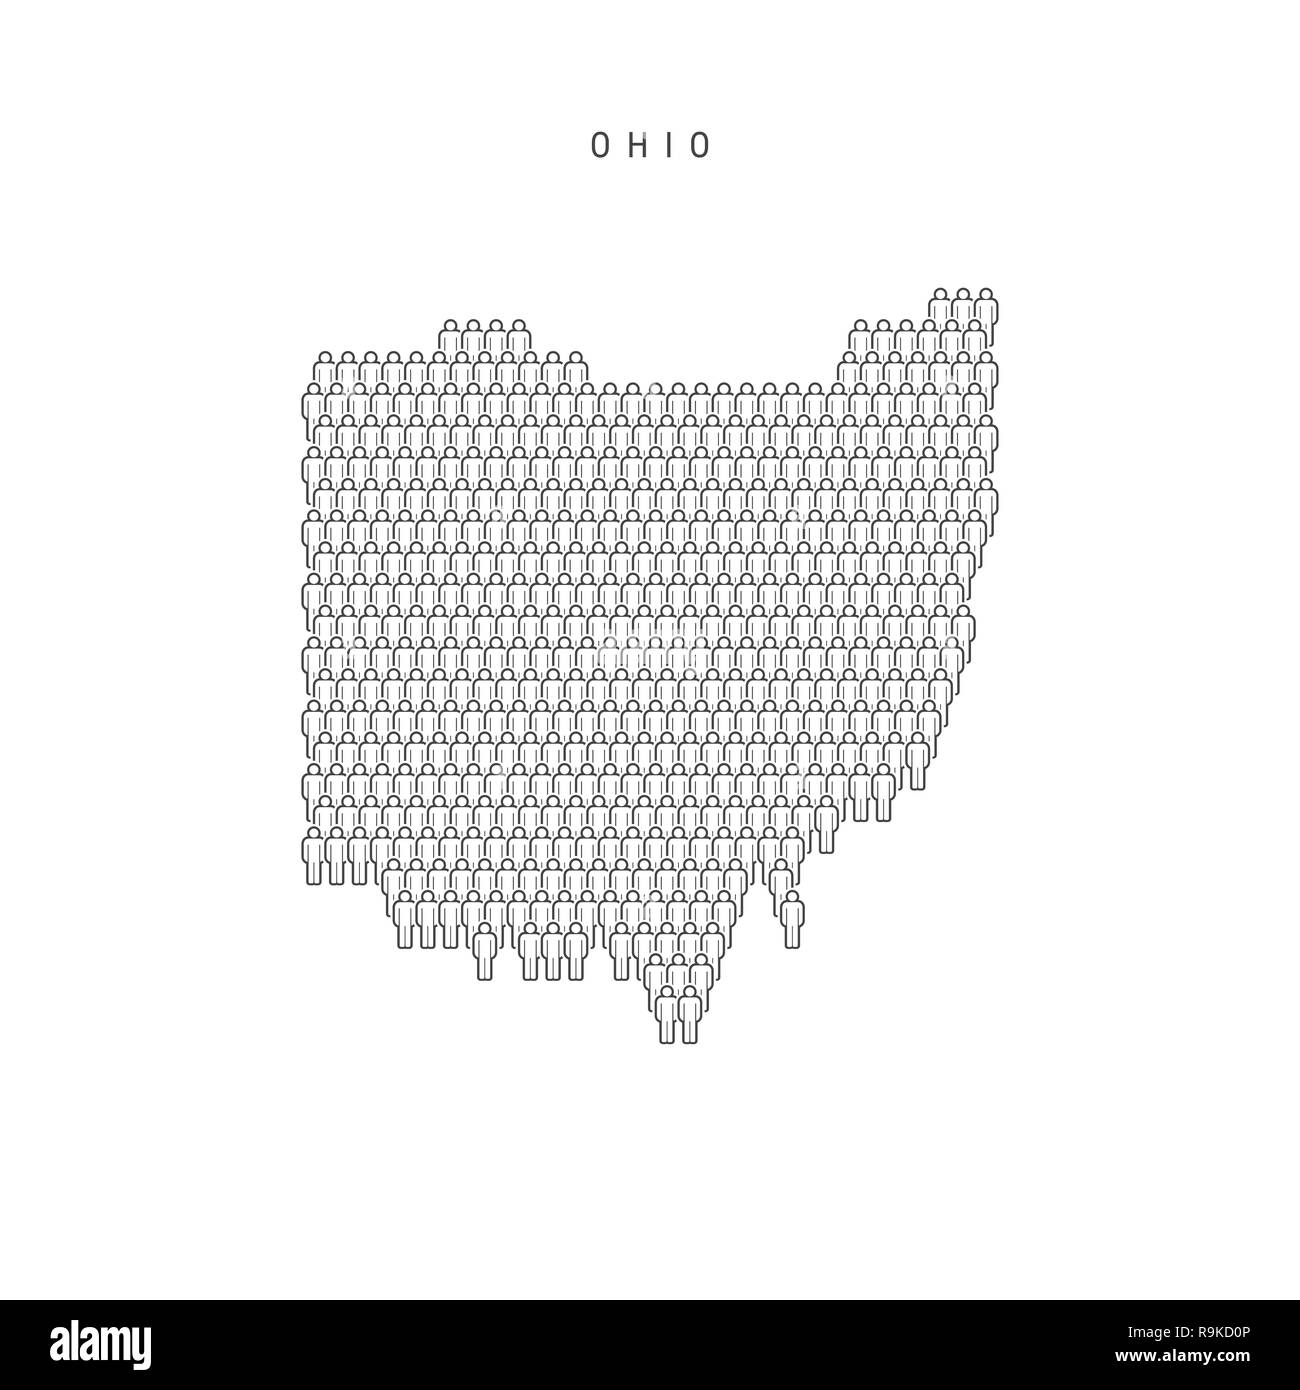 Leute Karte von Ohio, US-Staat. Stilisierte Silhouette, Leute in der Form einer Karte von Ohio. Ohio Bevölkerung. Abbildung isoliert auf weißem Backgro Stockfoto